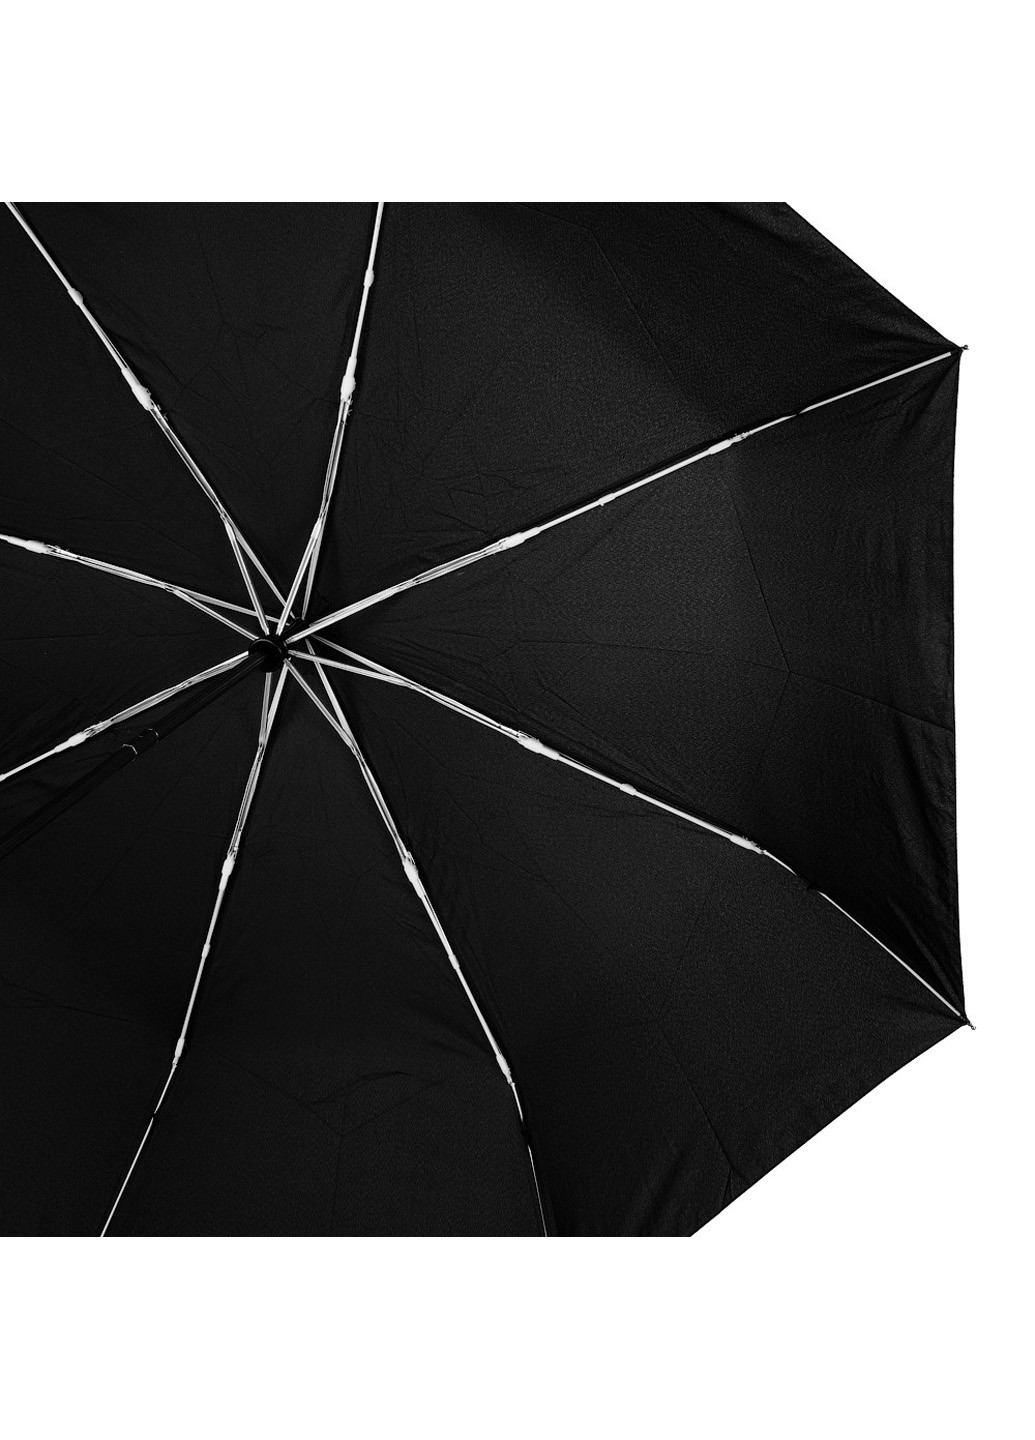 Чоловік складаний парасольку повний автомат 124 см Magic Rain (198875477)